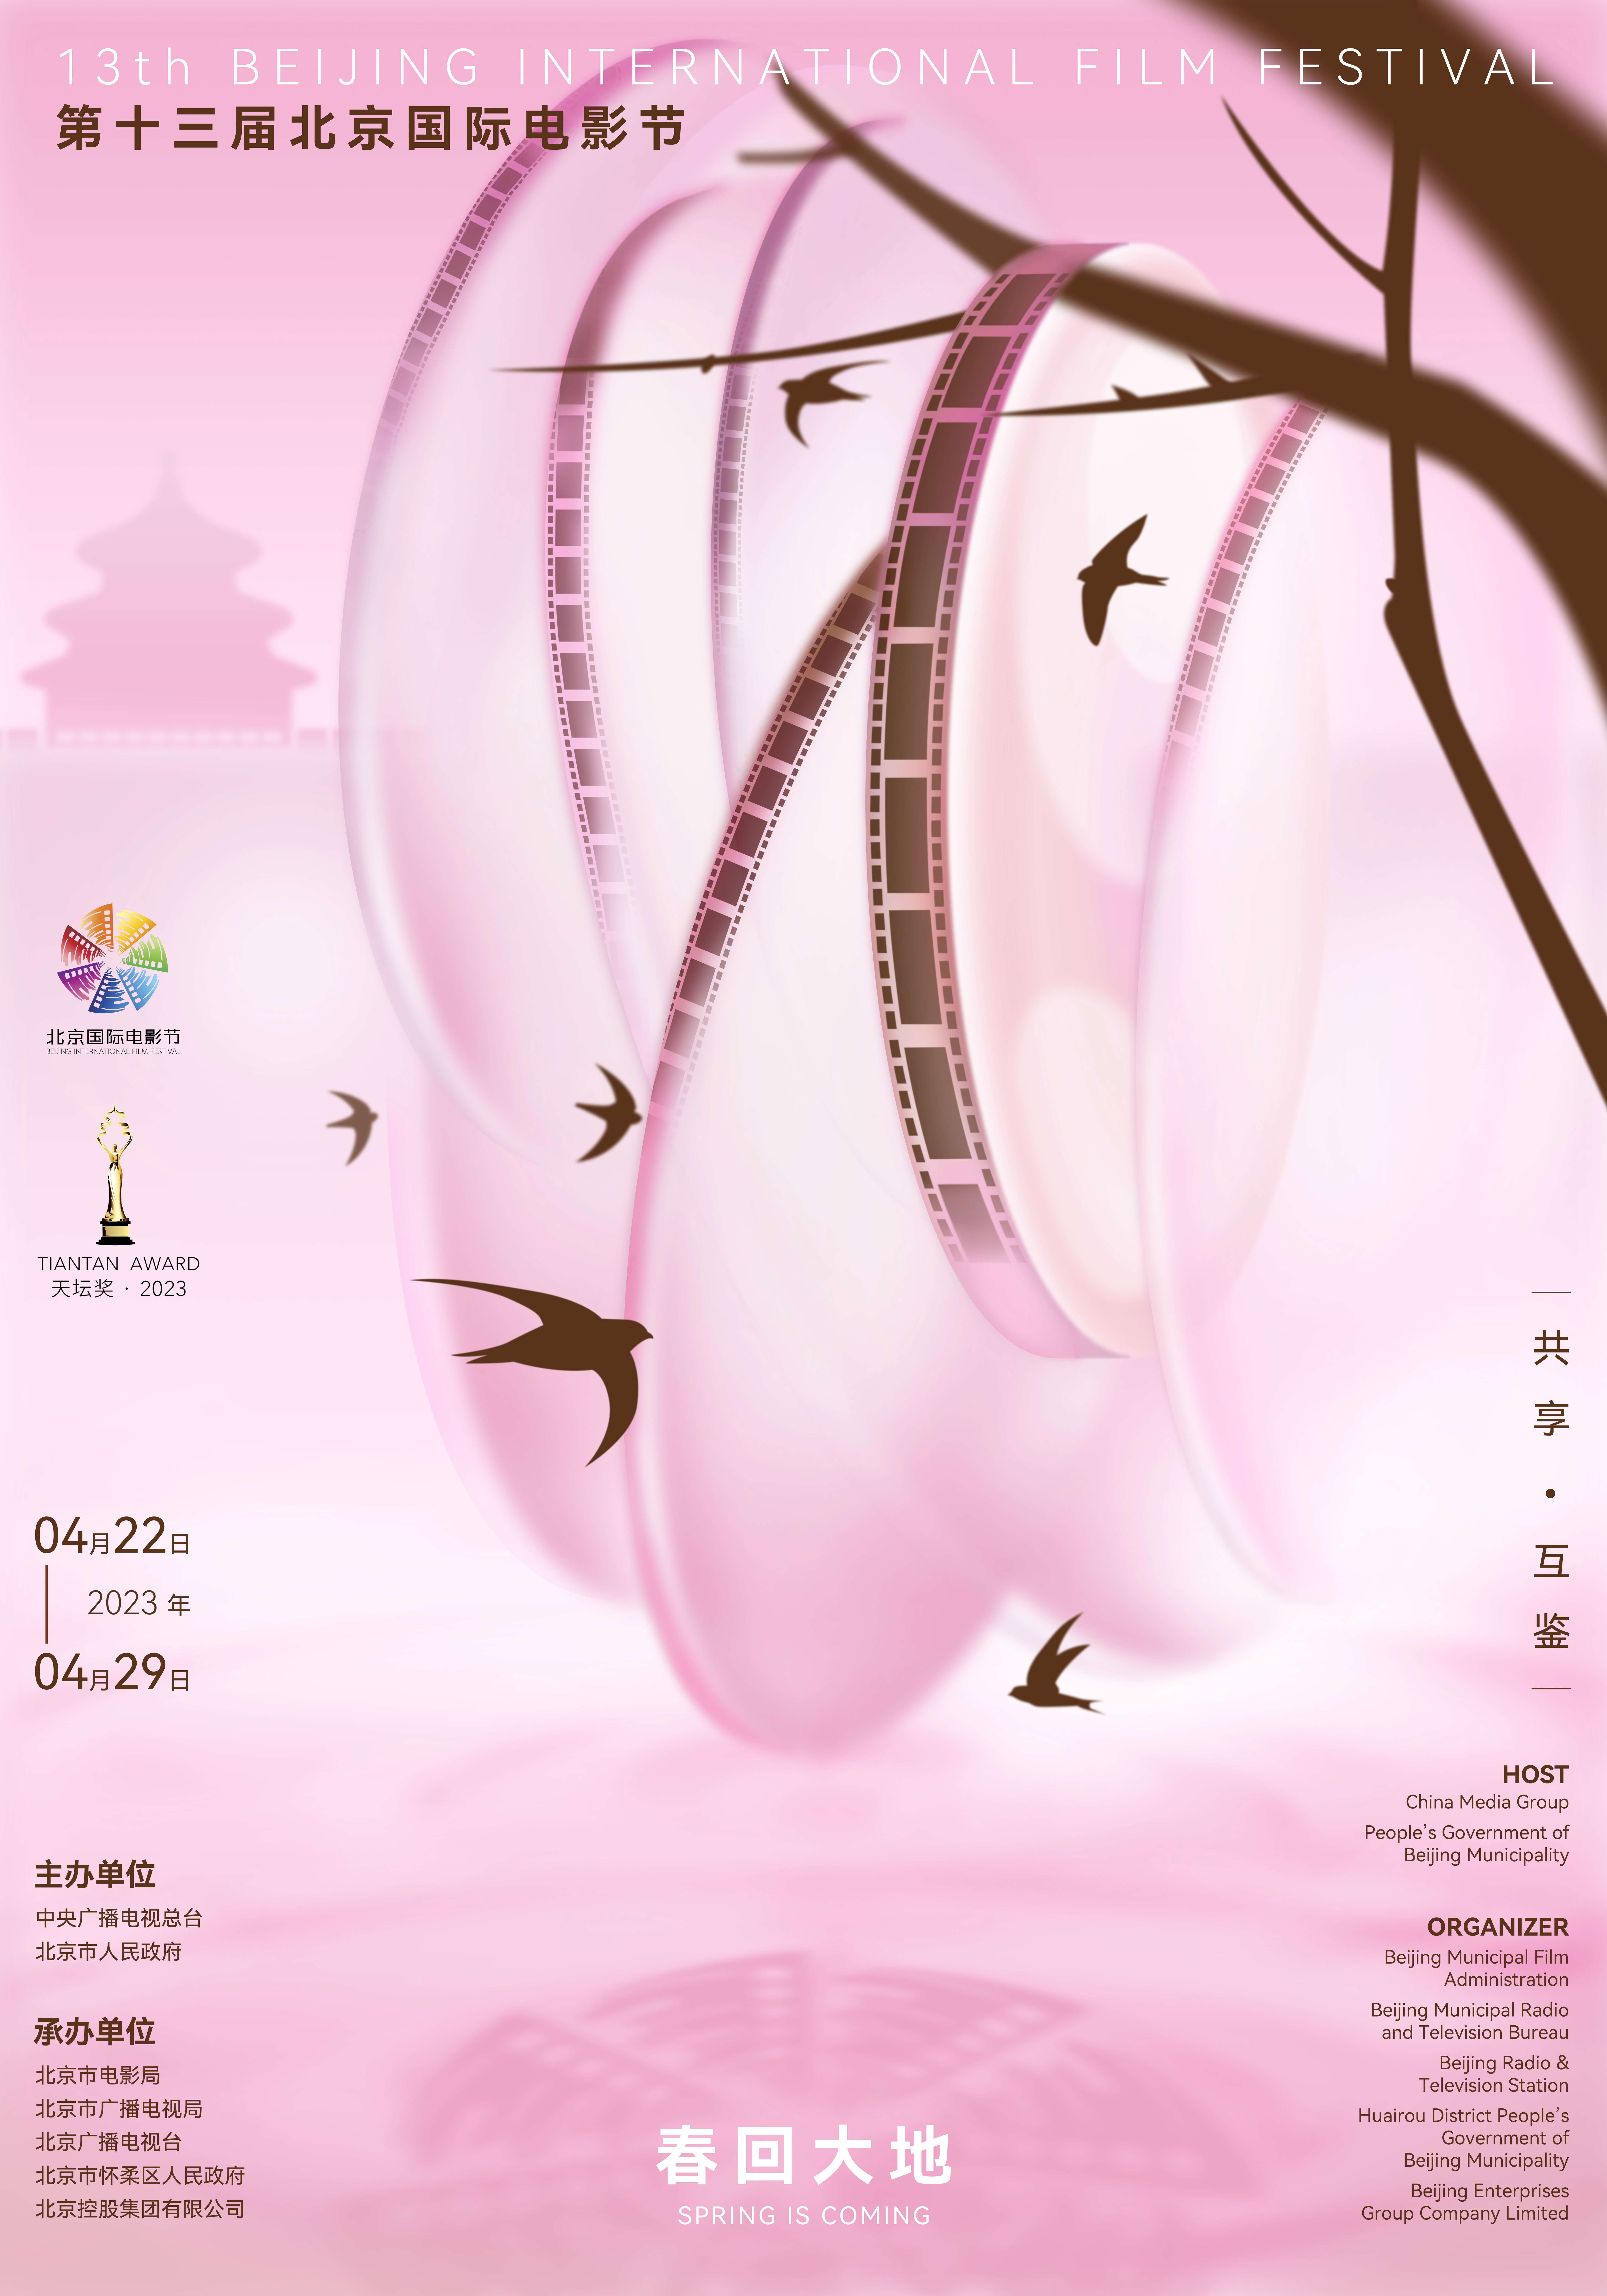 第十三届北京国际电影节将于4月22日至29日举办 入围影片公布